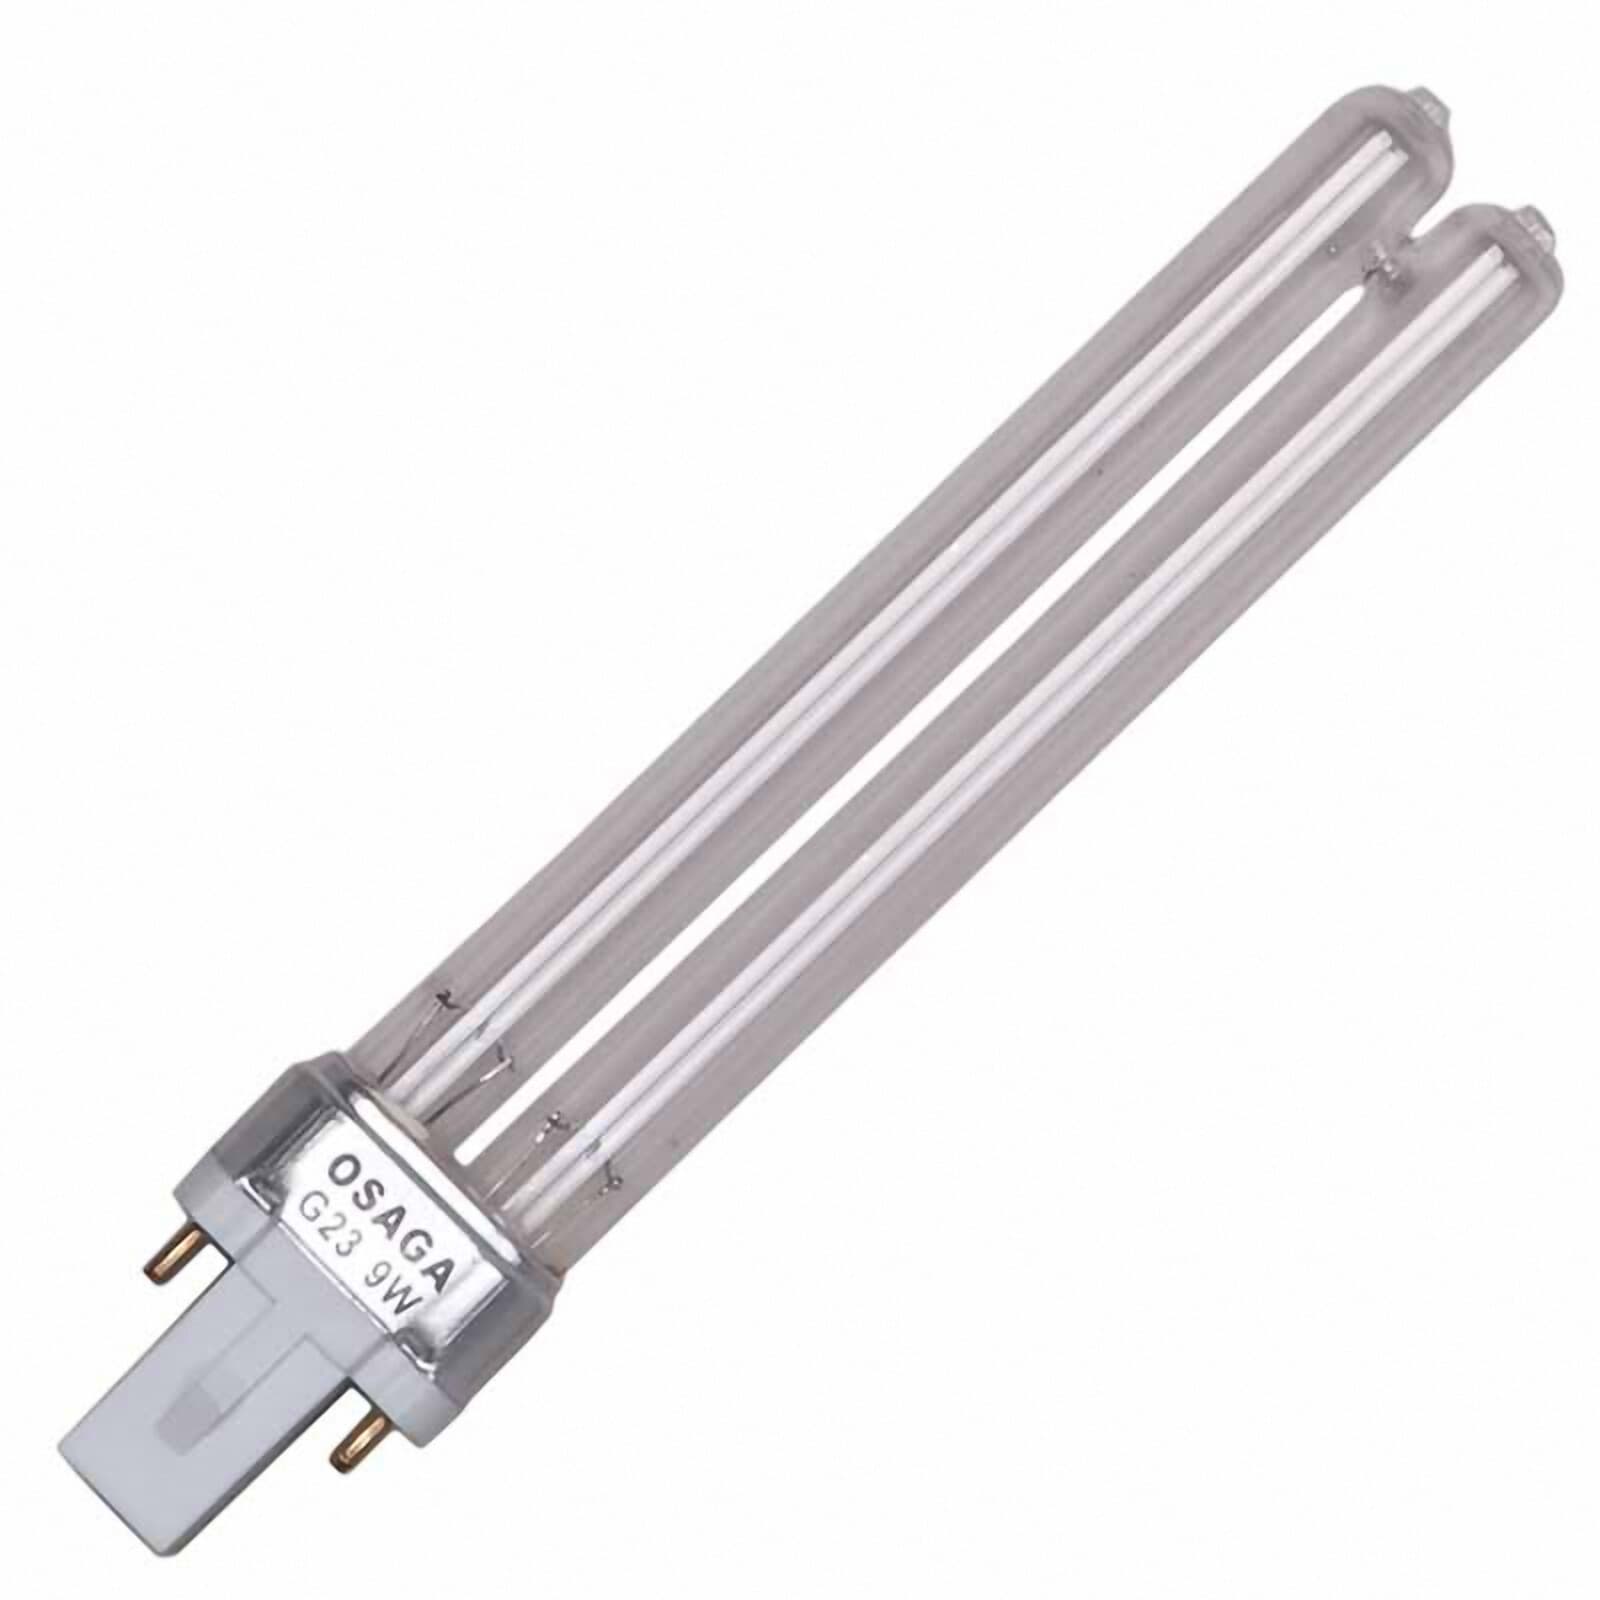 OSAGA UVC Ersatzlampe 13 Watt PL Sockel G23 UVC Lampe für alle UV-C Klärgeräte 